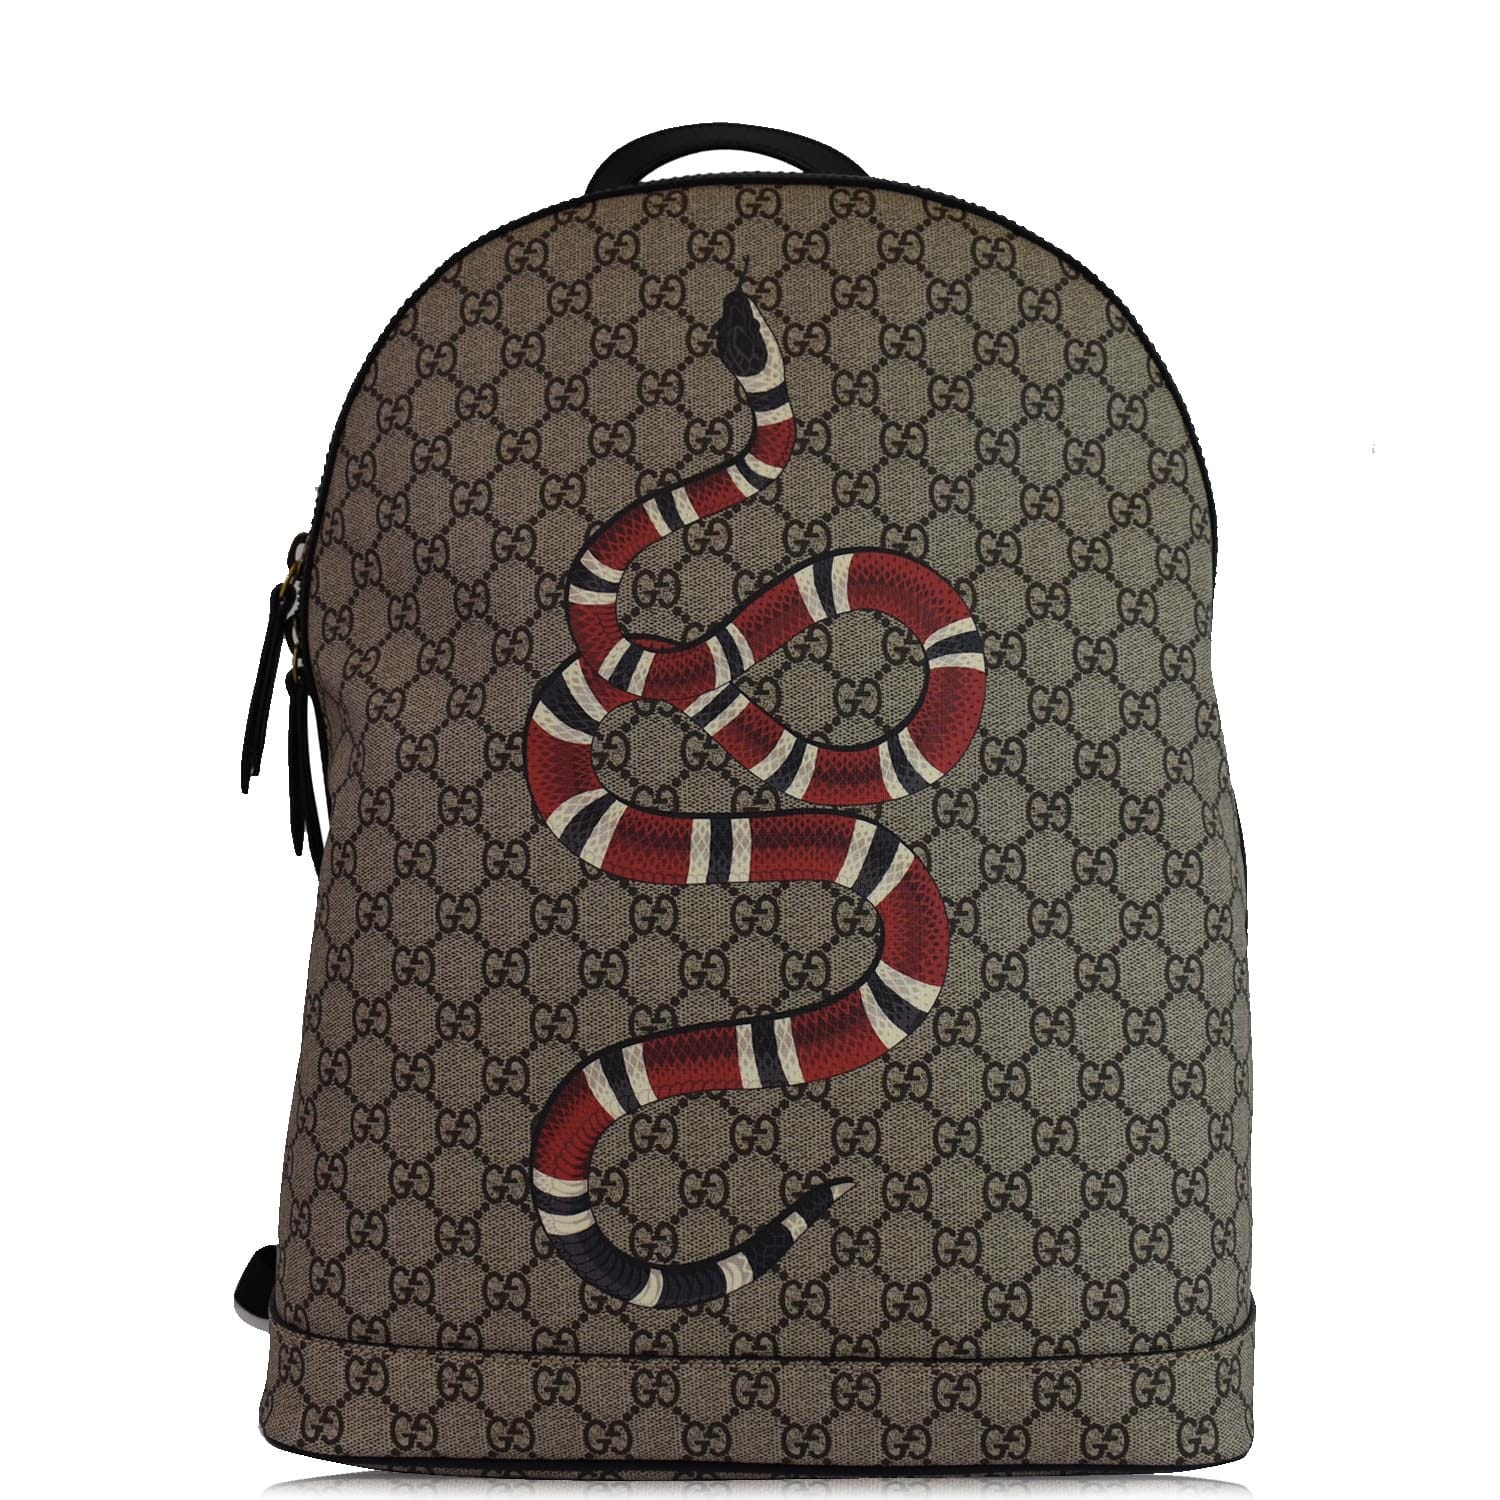 MCM backpack snake printed